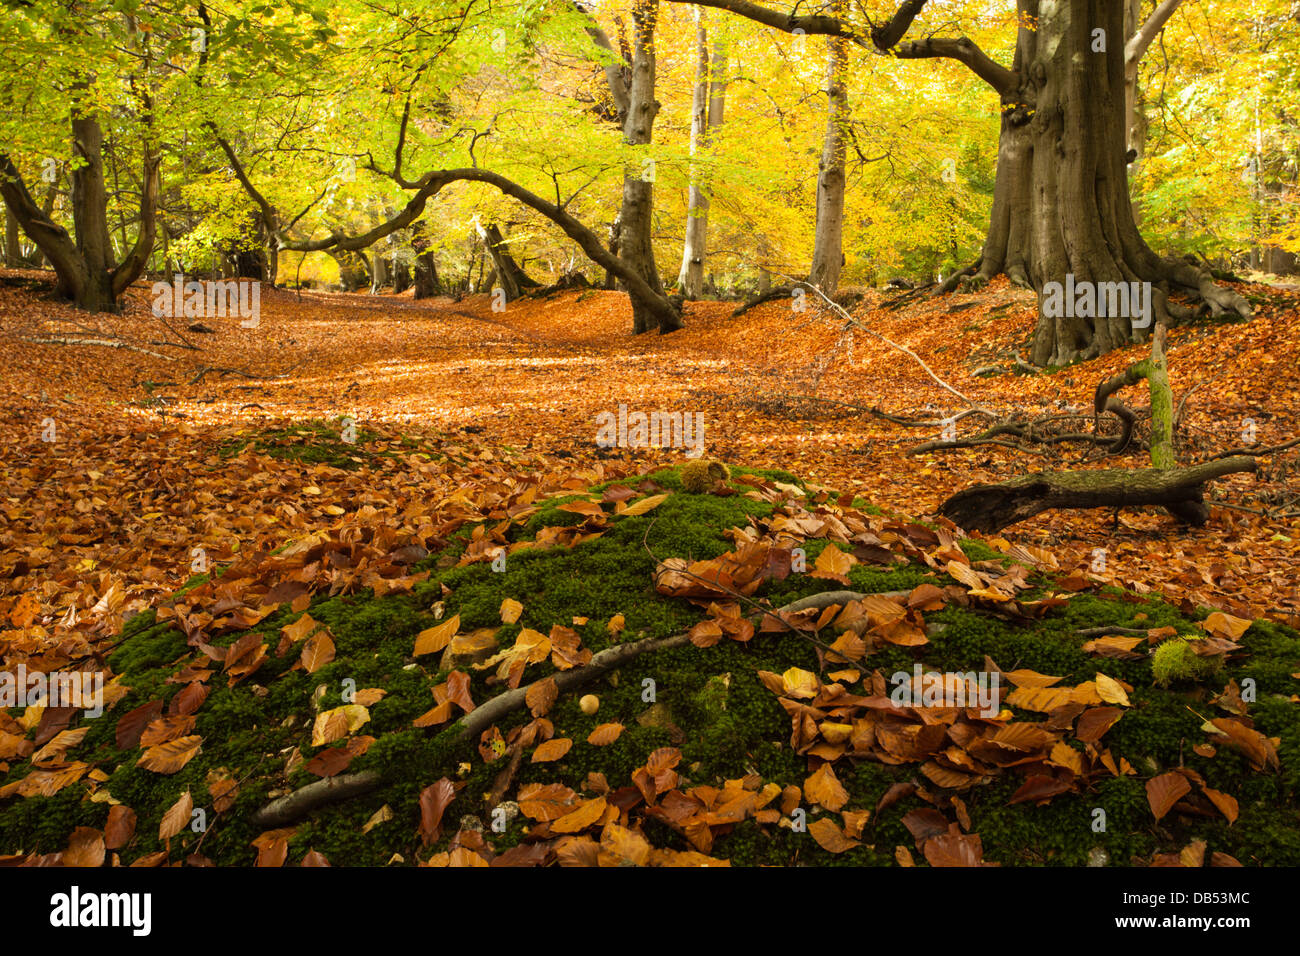 Allee der alten Buche Bäume innerhalb Thunderdell Holz in vollen Herbstfarben, Ashridge Estate, Hertfordshire, England Stockfoto